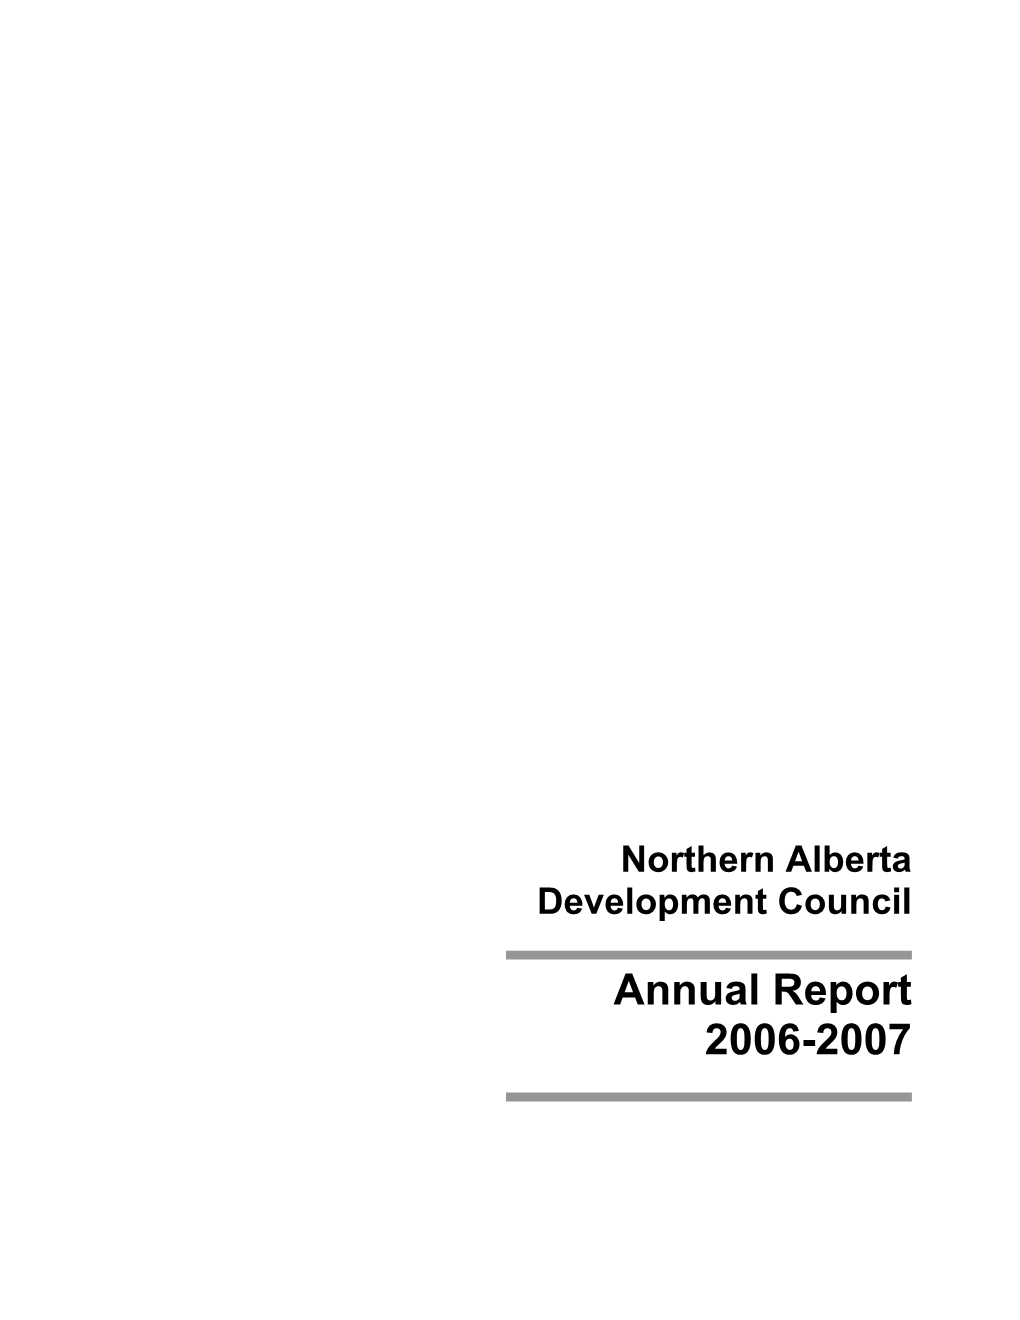 Northern Alberta Development Council Annual Report 2006-2007